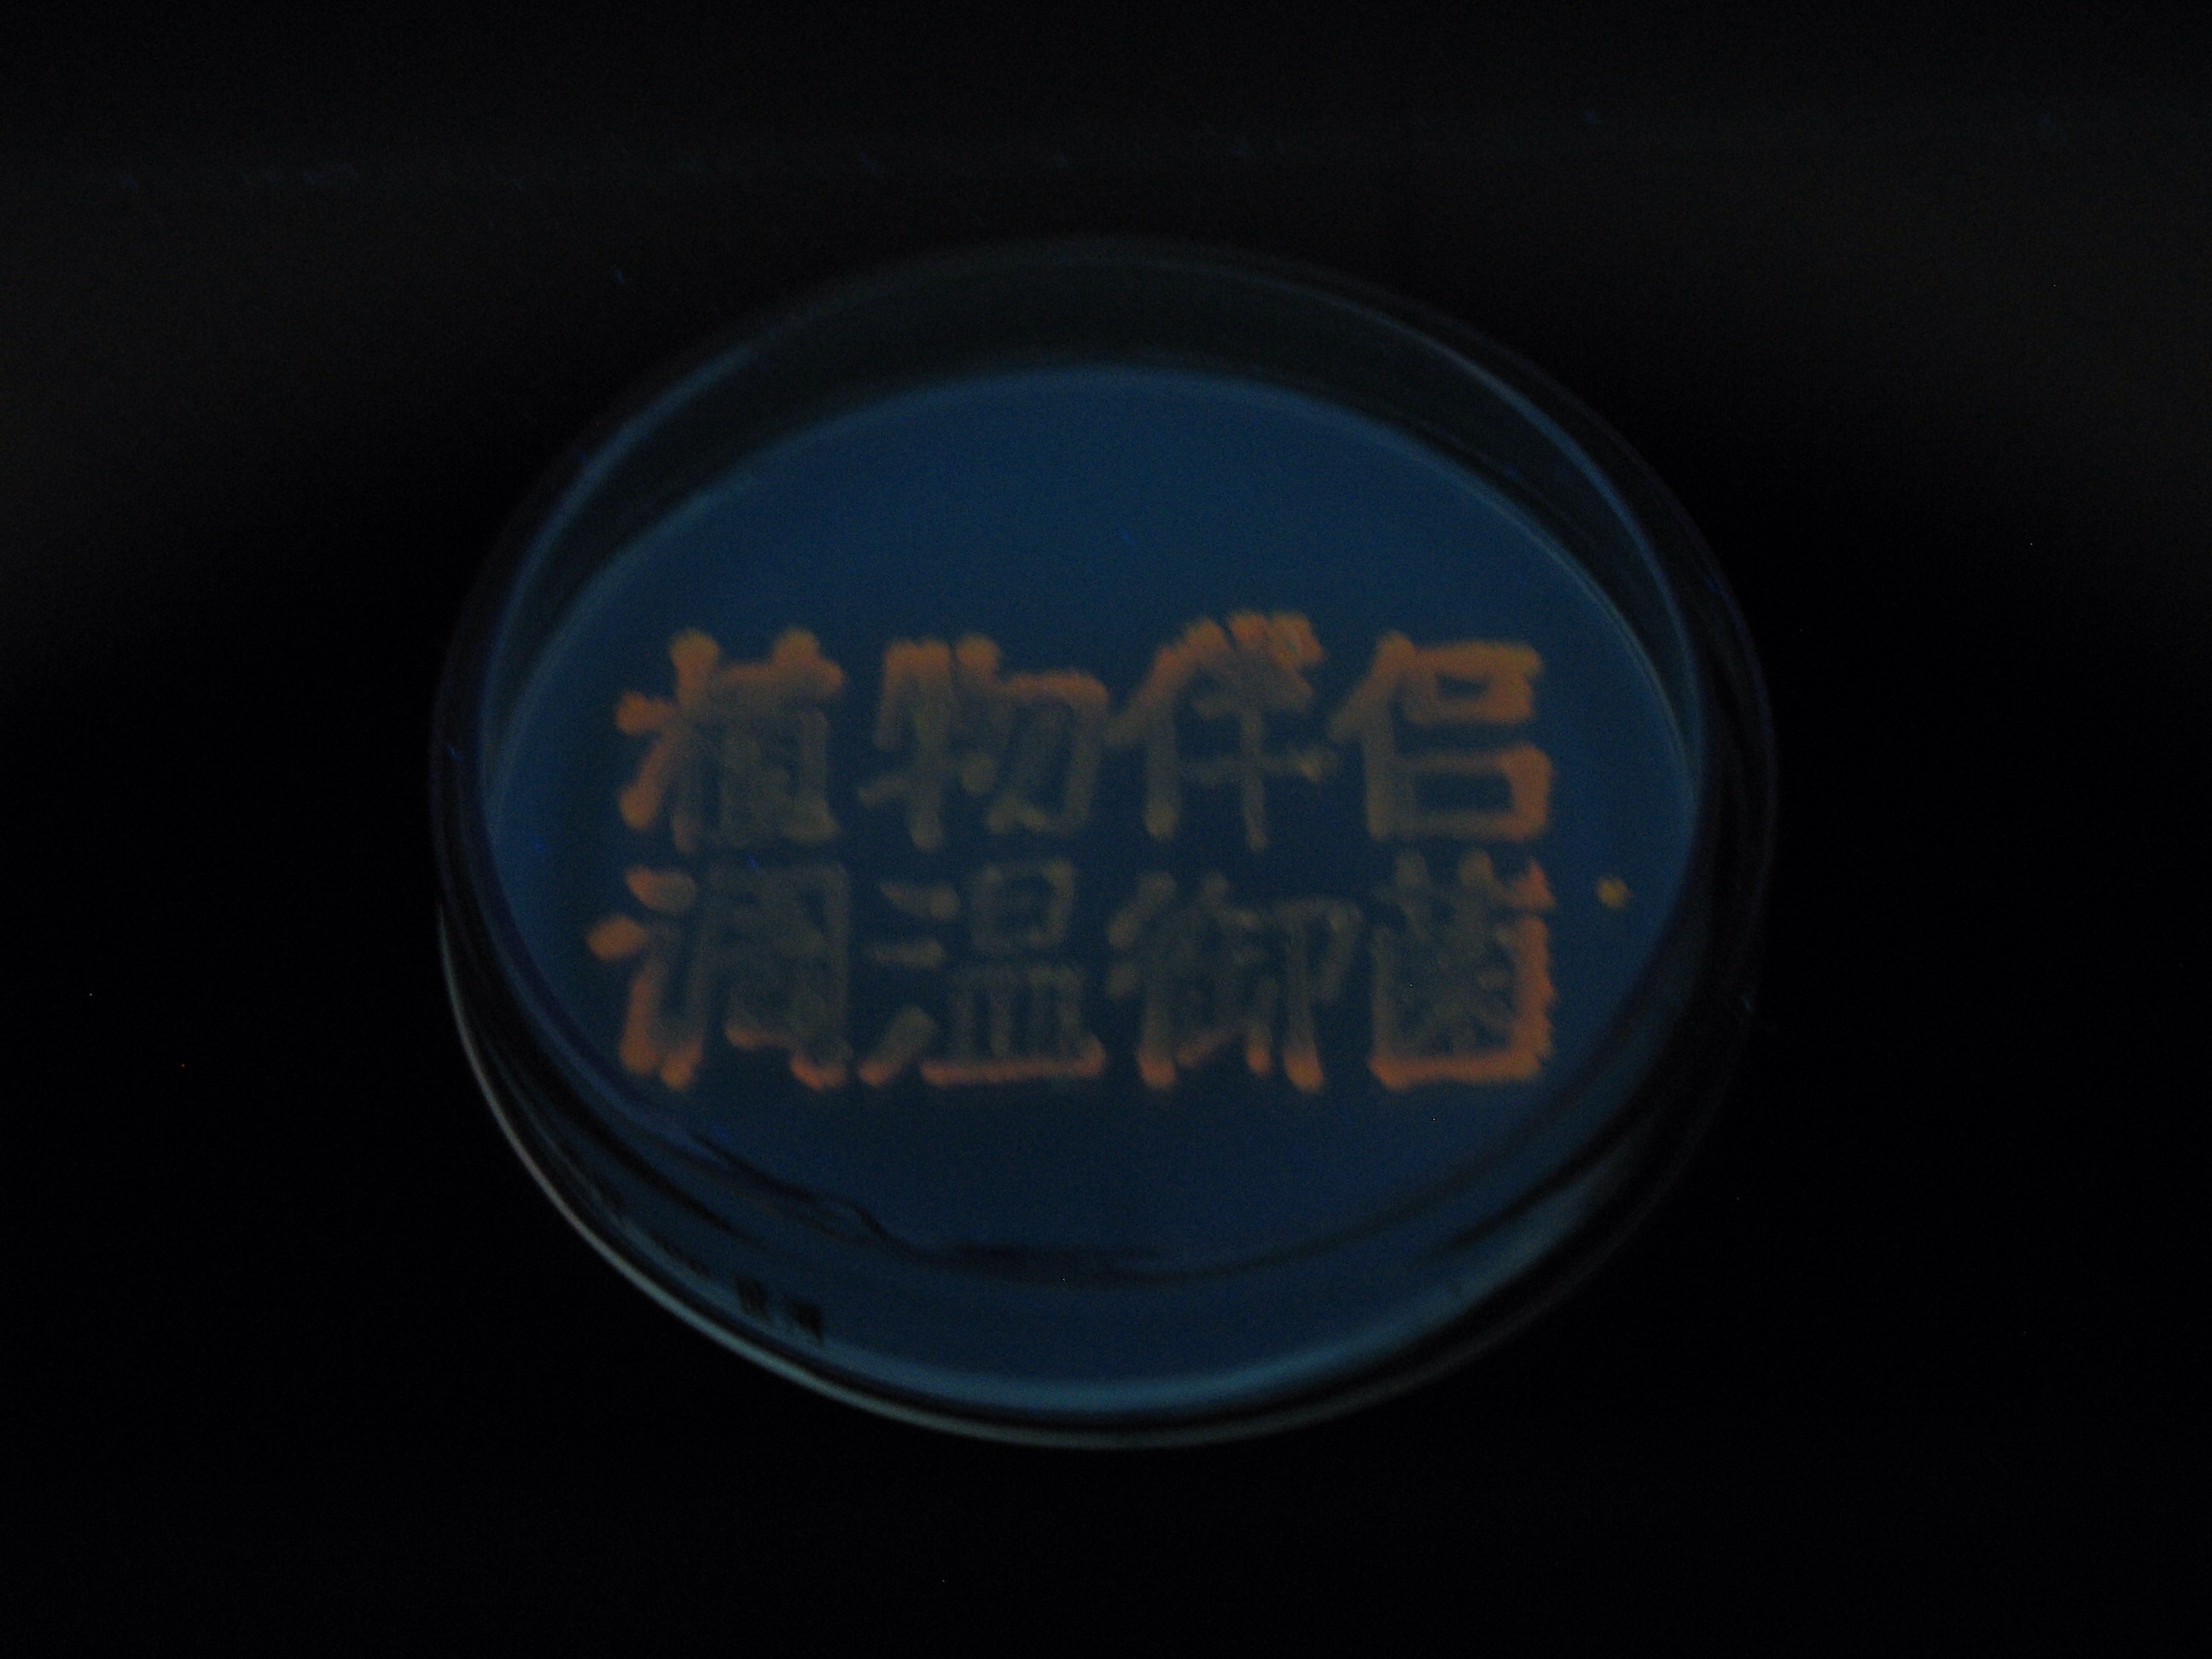 E.coli the Fluorescent